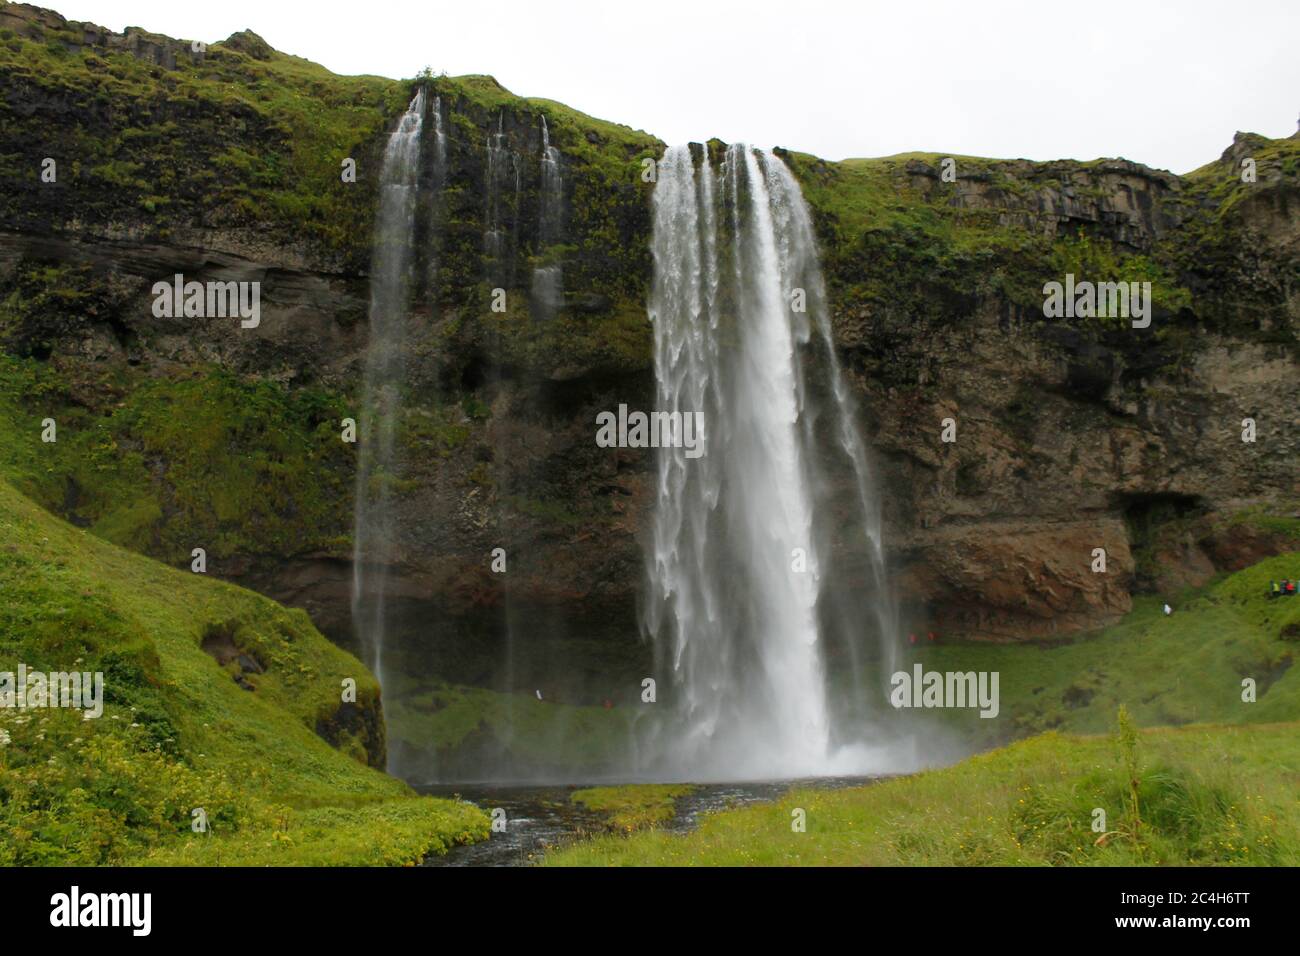 La cascade de Seljalandsfoss, une destination touristique bien connue en Islande Banque D'Images